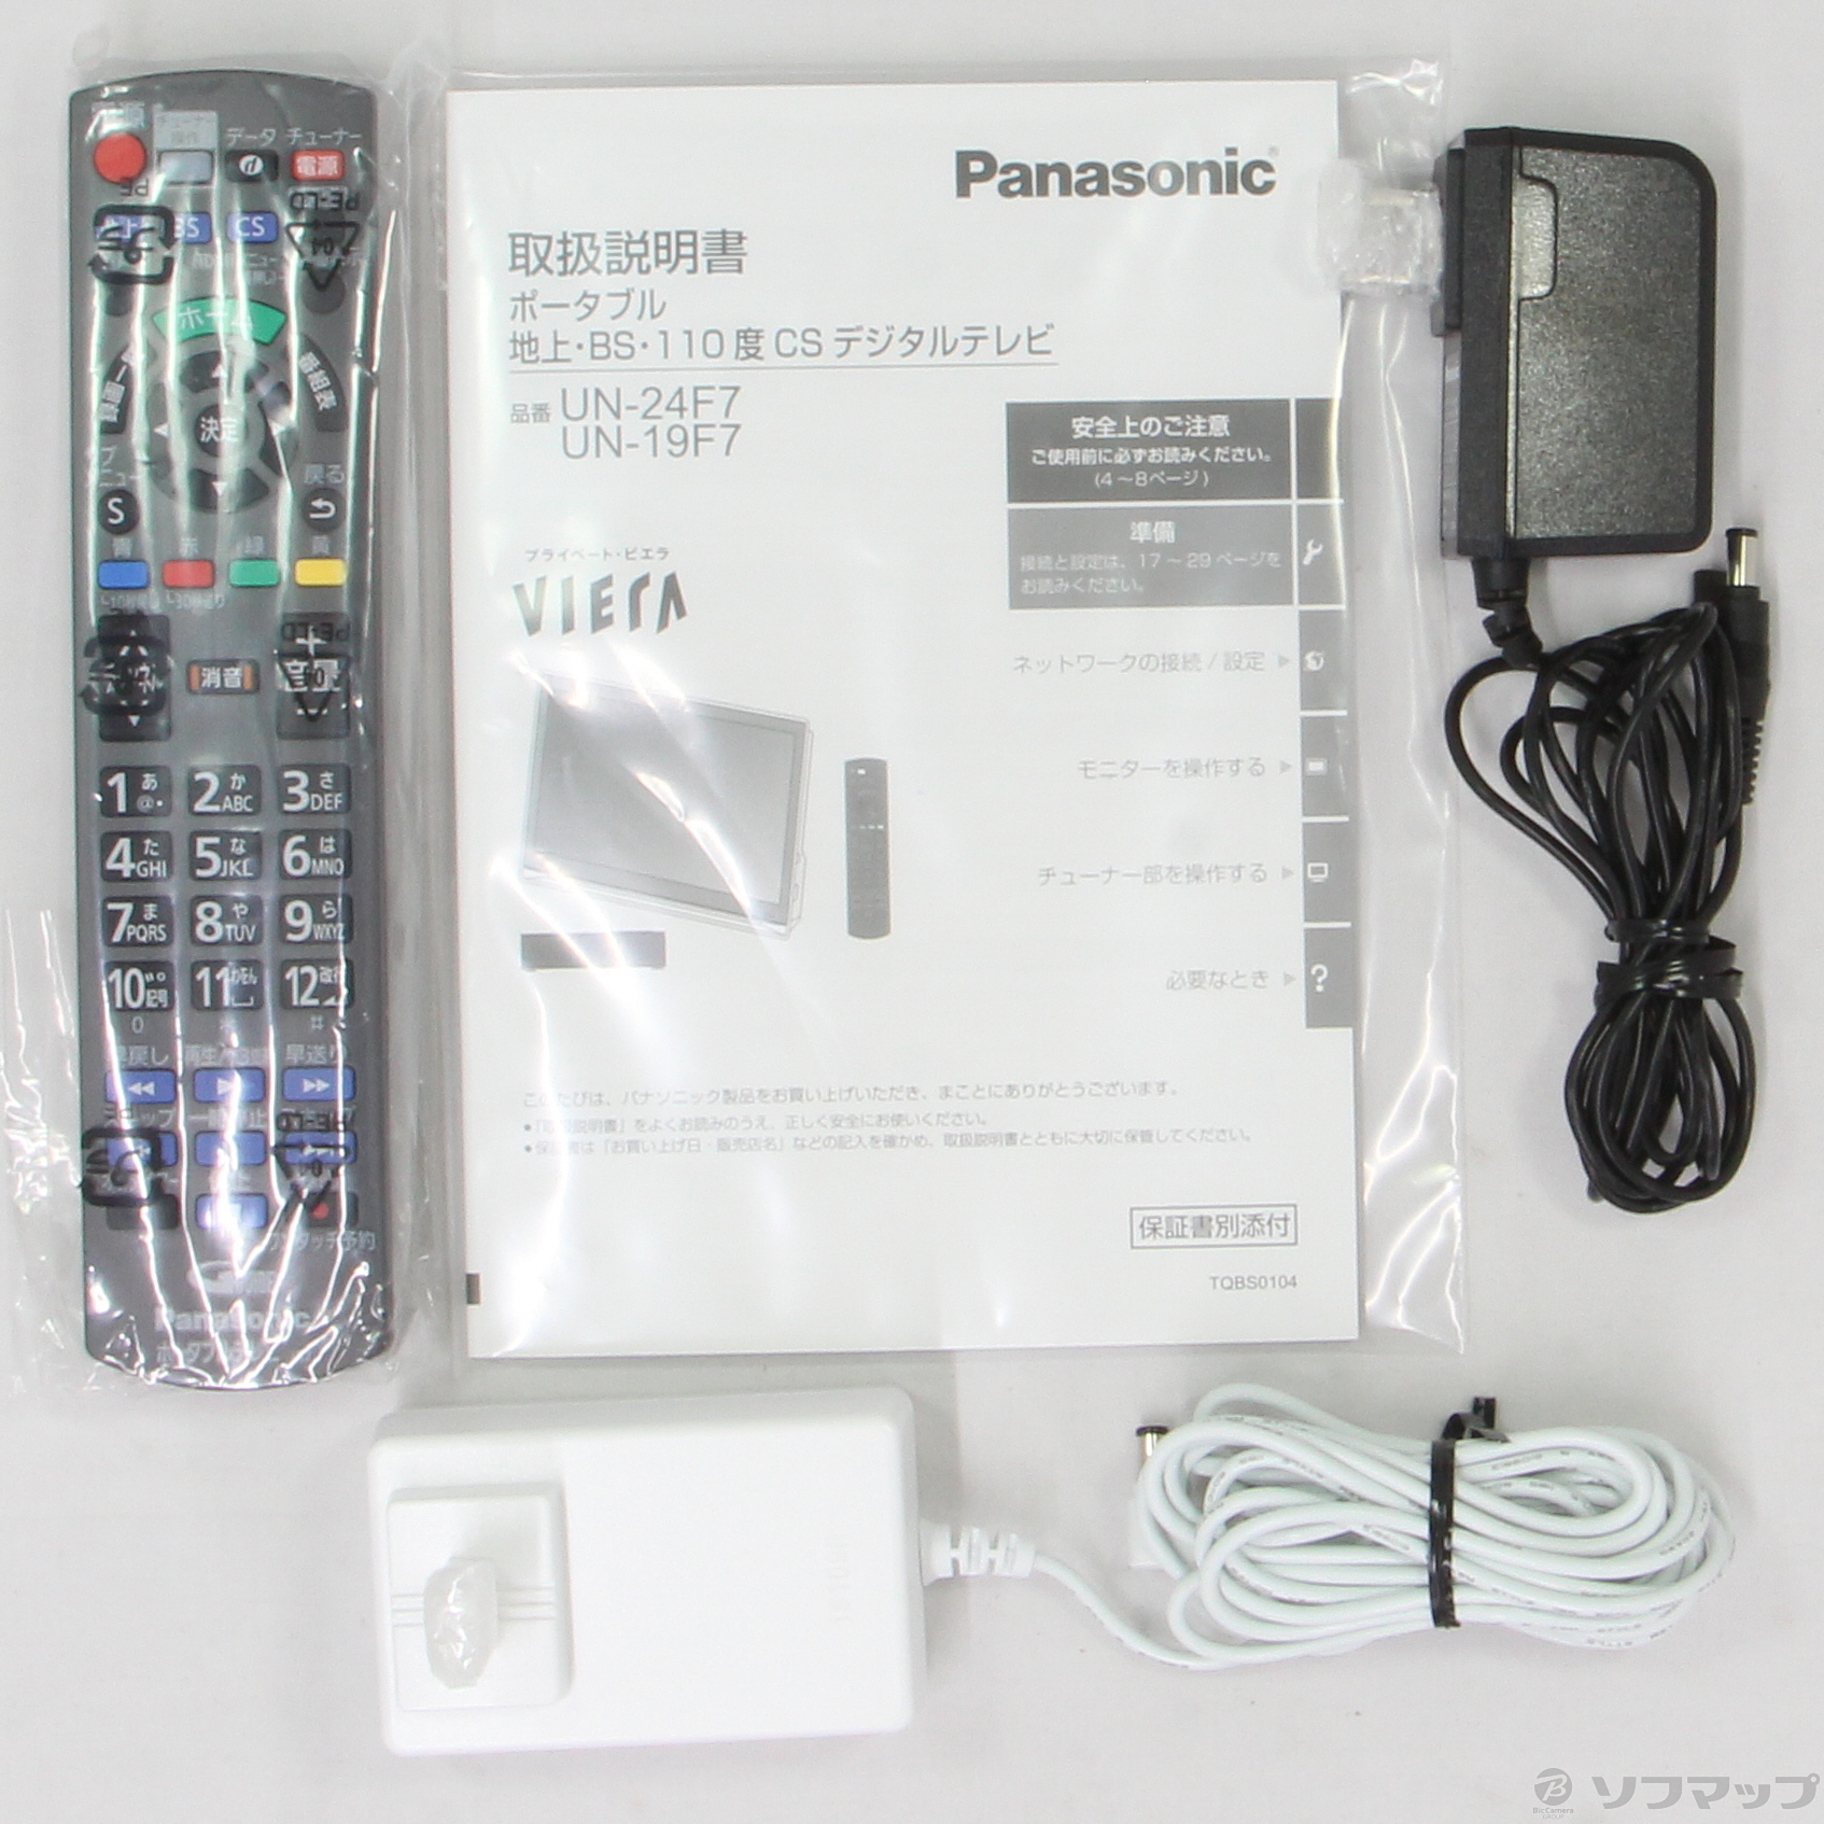 新着順Panasonic パナソニック UN-19F7D プライベートビエラ テレビ